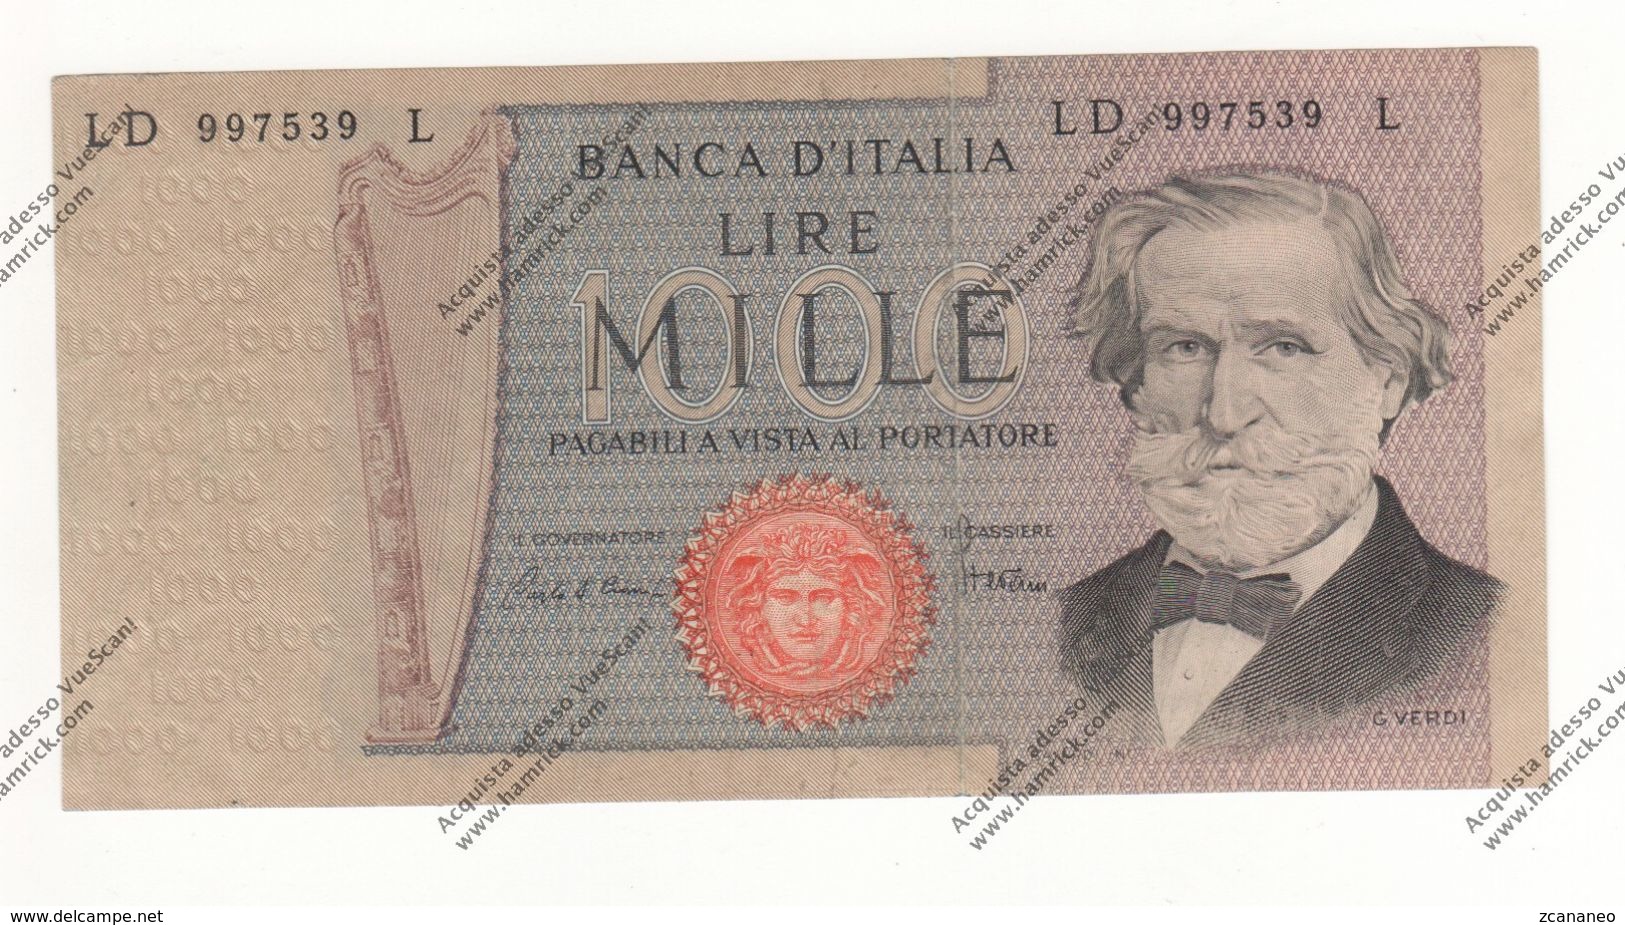 BANCONOTA DA 1.000 LIRE VERDI DEL 1969 REP. ITALIANA - - 1000 Lire